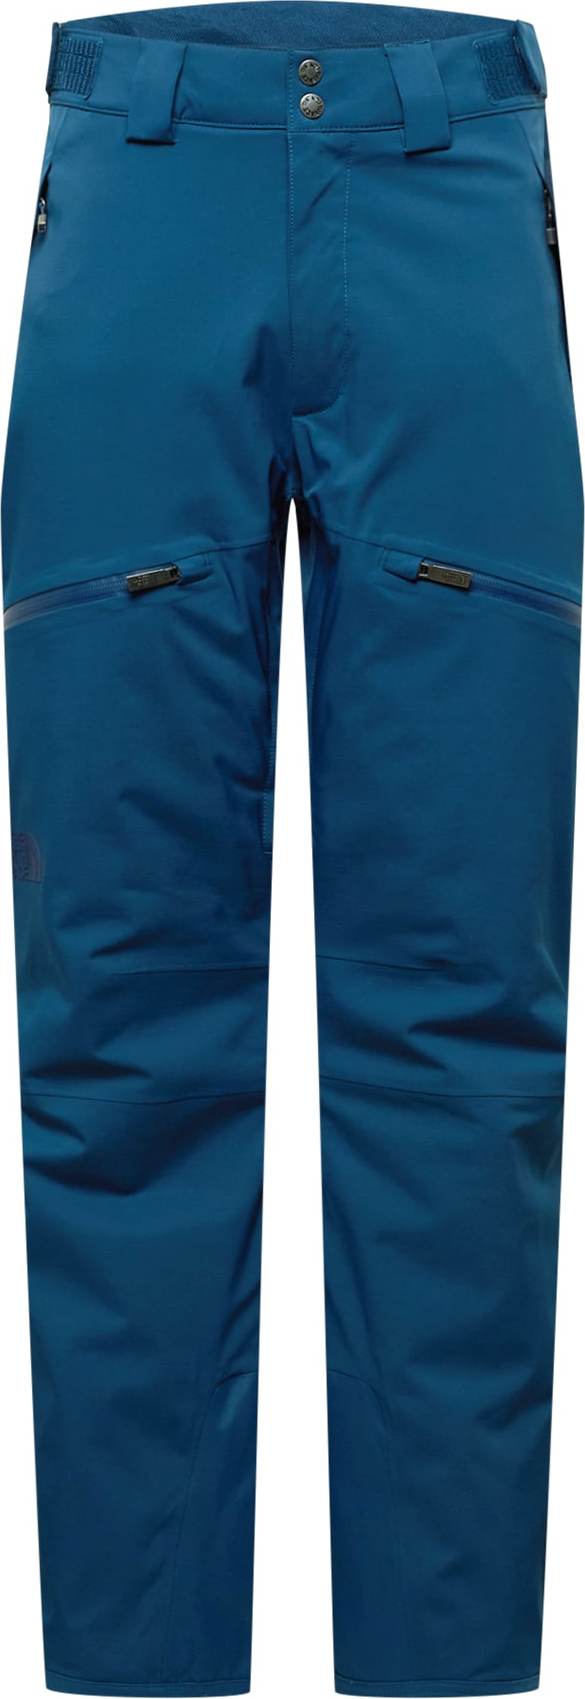 THE NORTH FACE Sportovní kalhoty 'CHAKAL' královská modrá